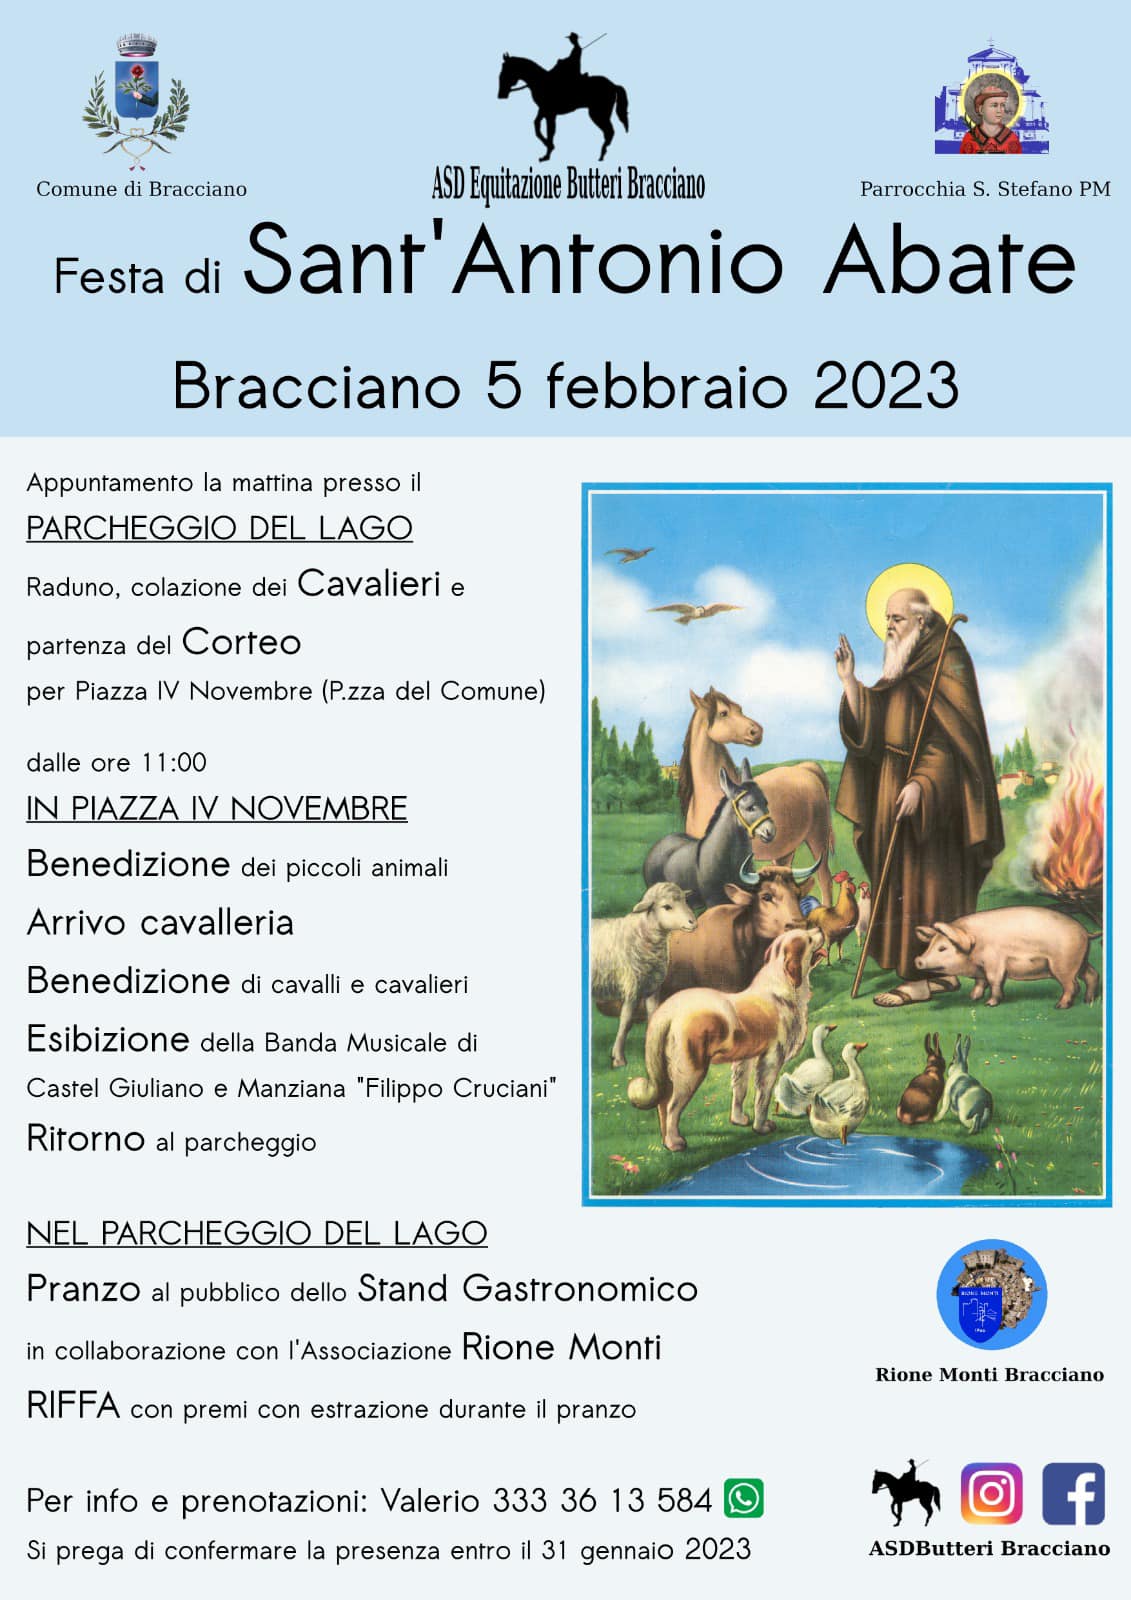 Festa di Sant'Antonio Abate, Bracciano 5 febbraio 2023